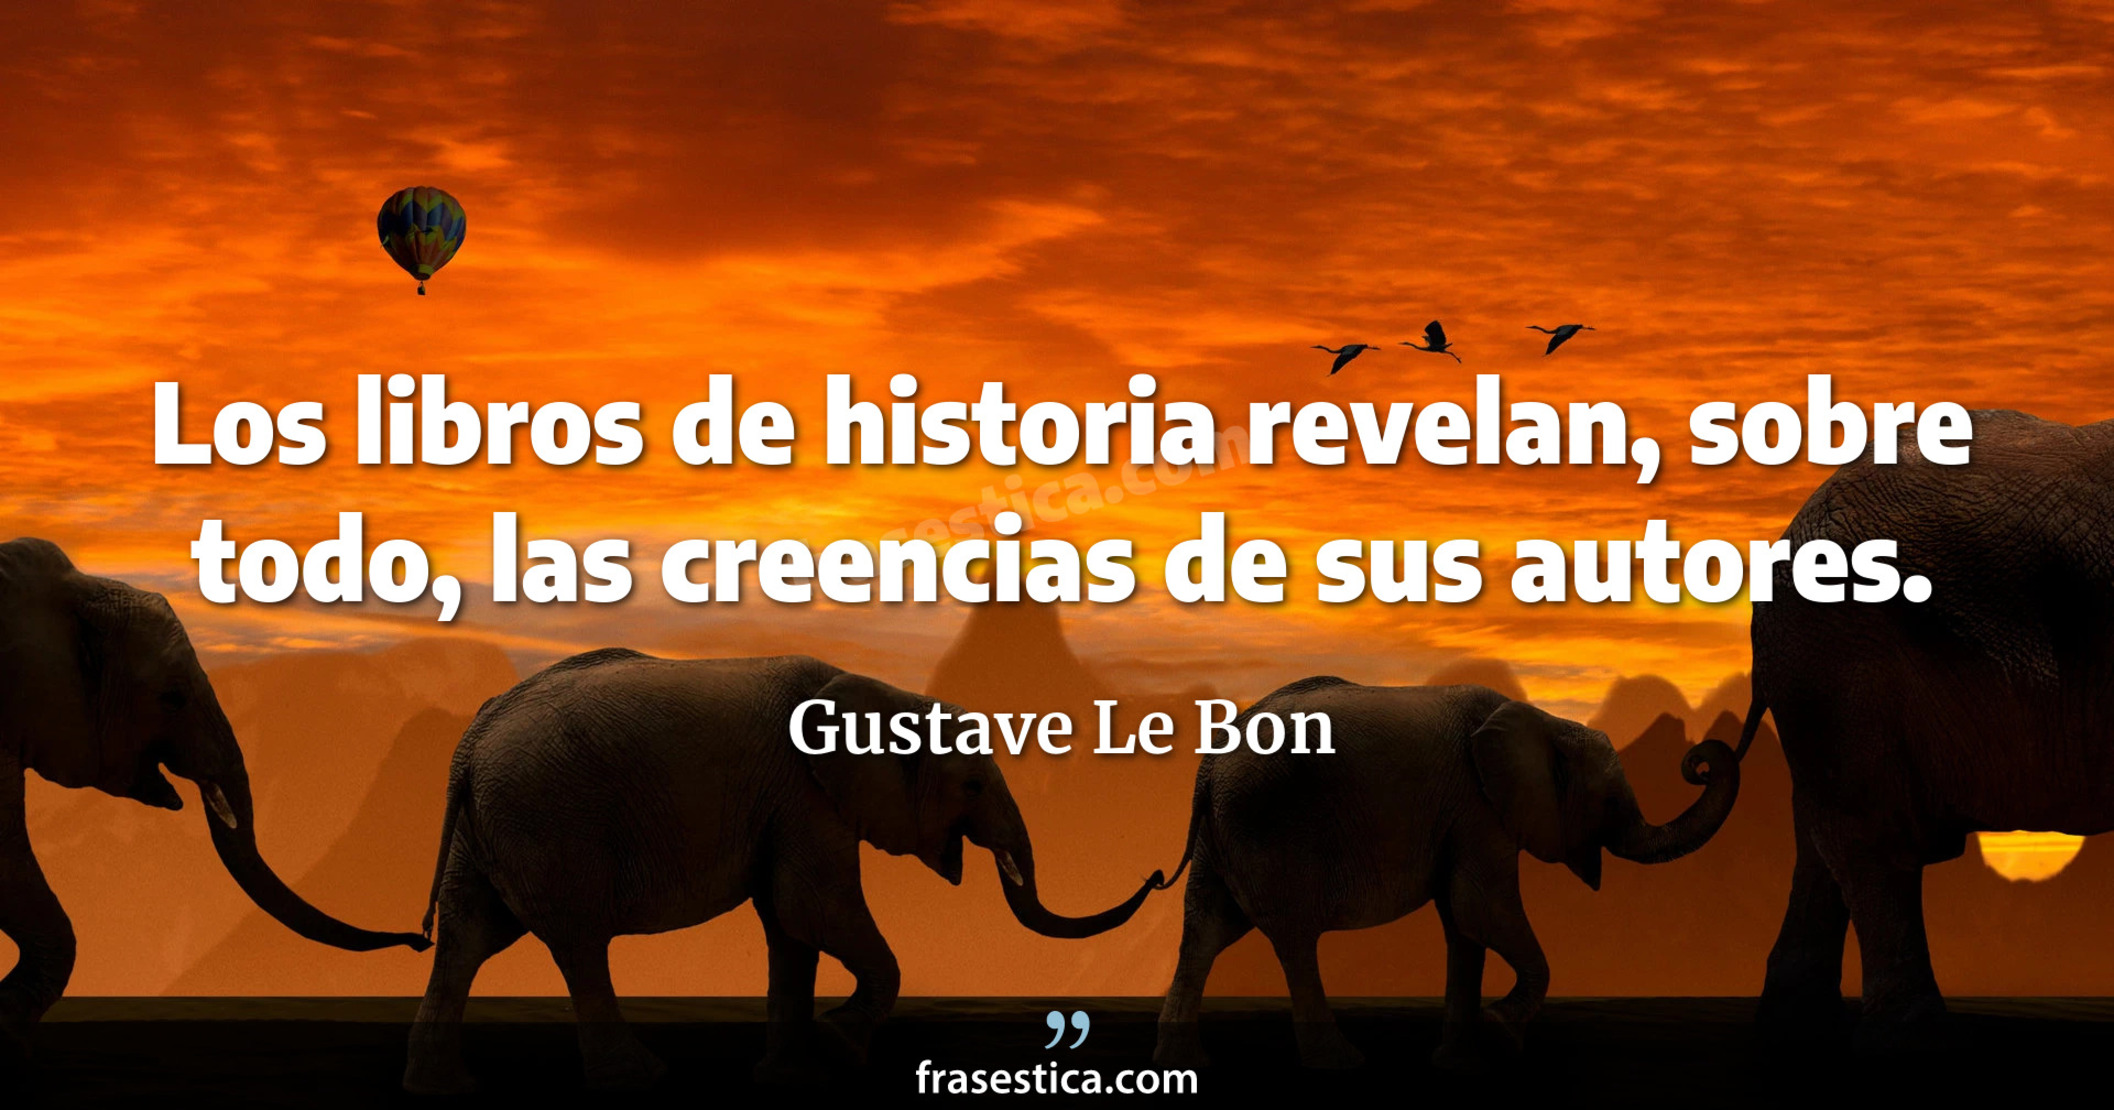 Los libros de historia revelan, sobre todo, las creencias de sus autores. - Gustave Le Bon